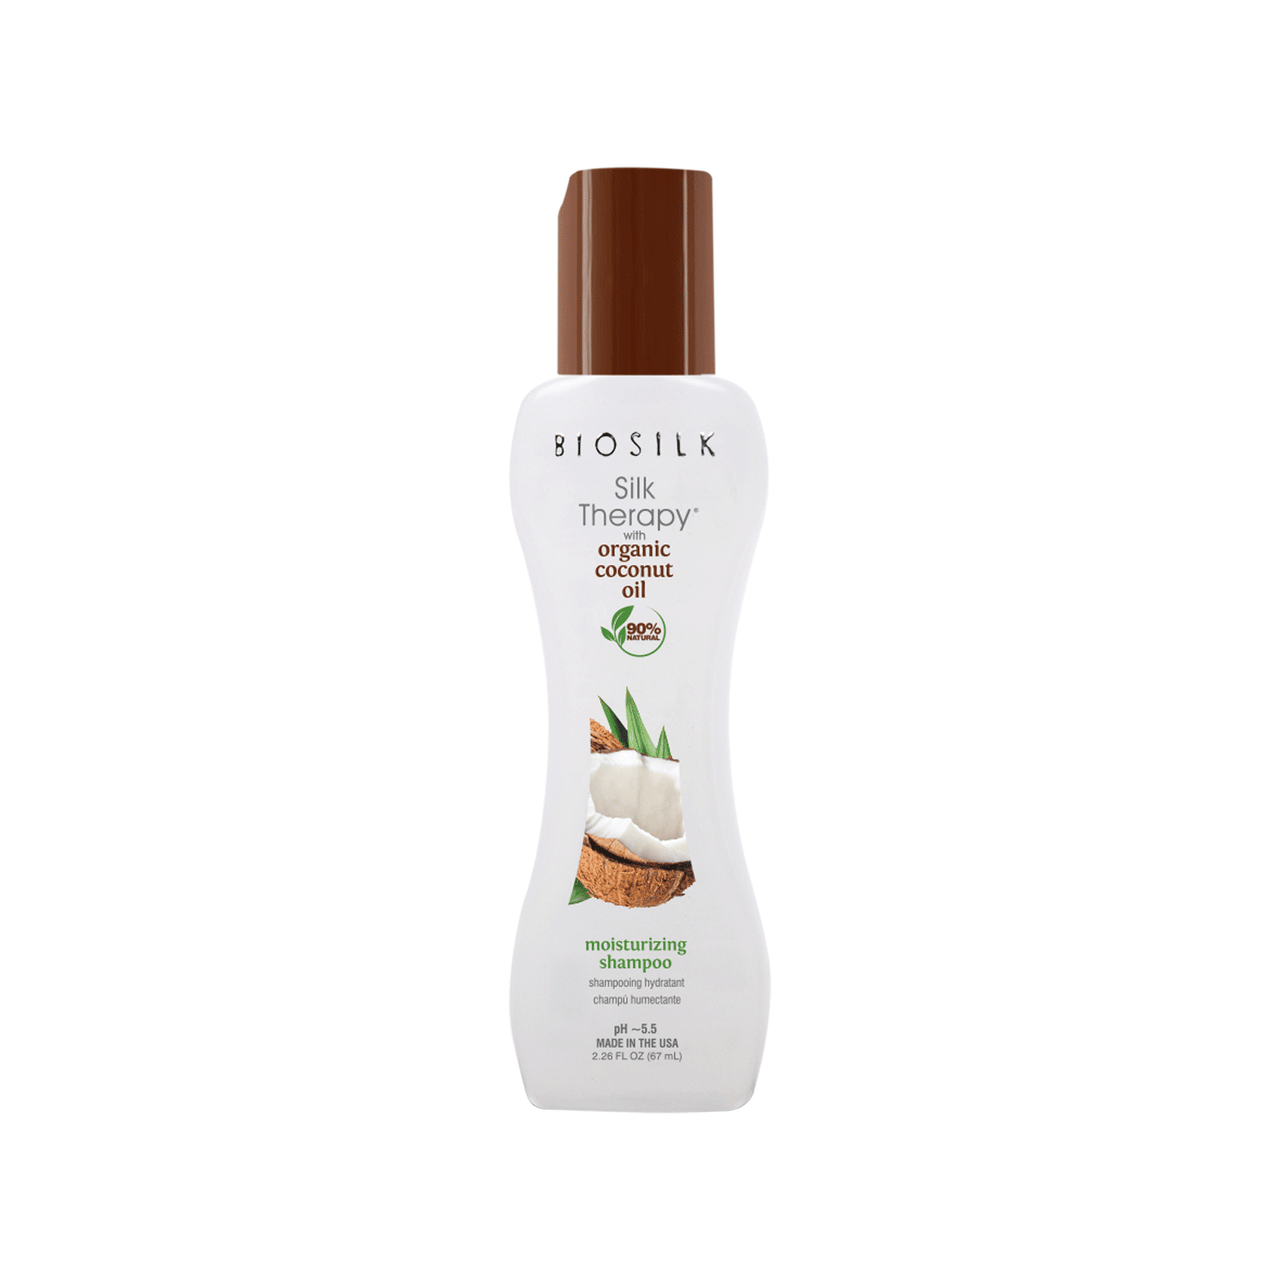 BioSilk Biosilk Silk Therapy with Coconut Oil Moisturizing Shampoo 2.26 fl oz